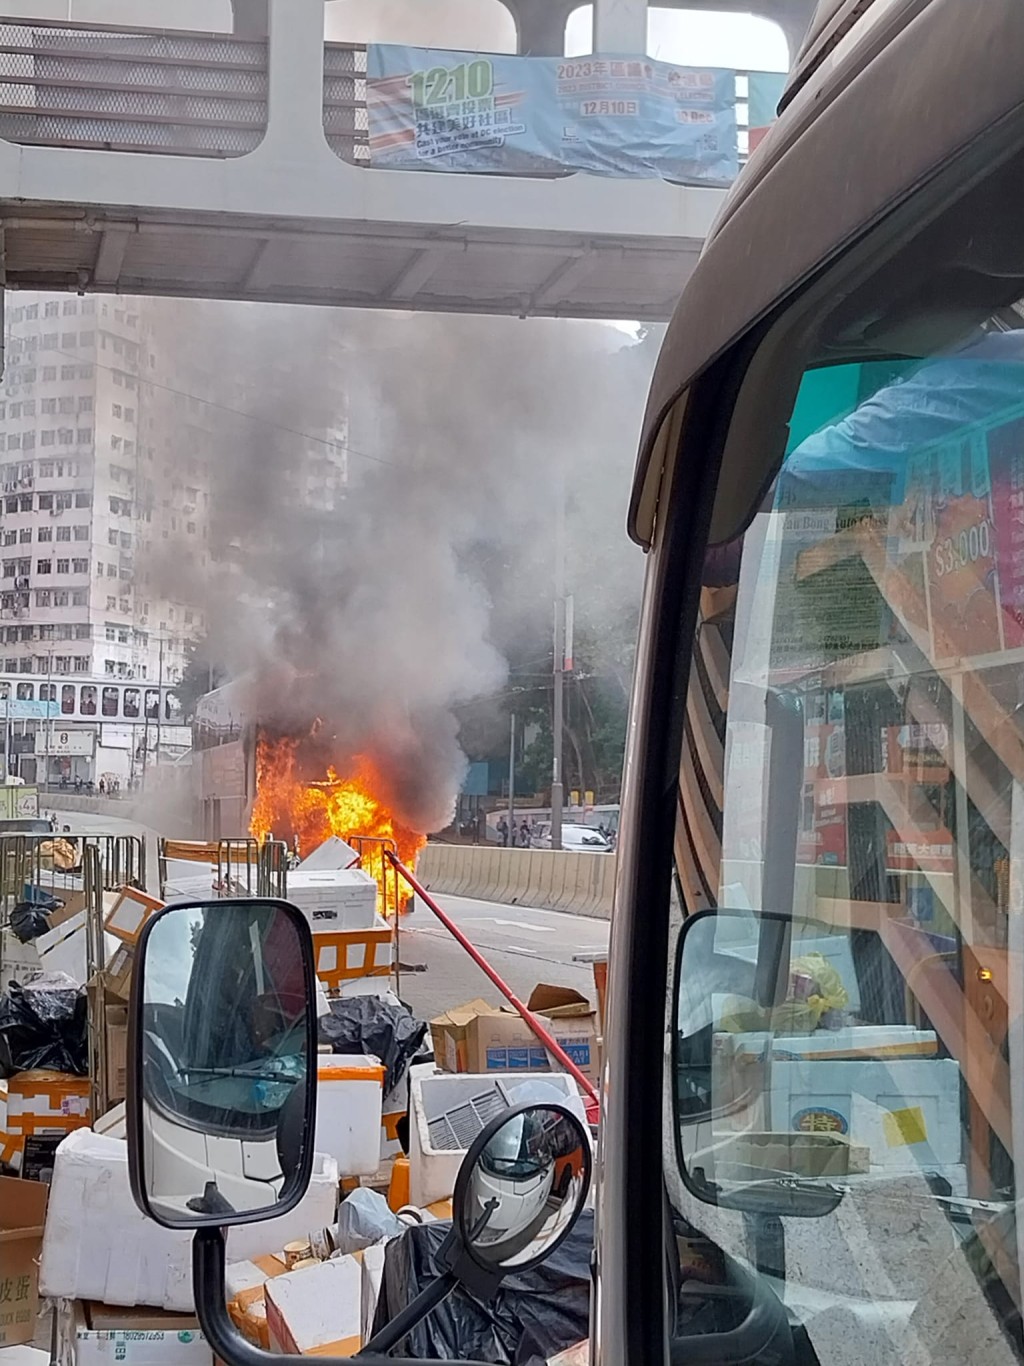 城巴起火焚烧。fb 马路的事 (即时交通资讯台)     Henize Leung        